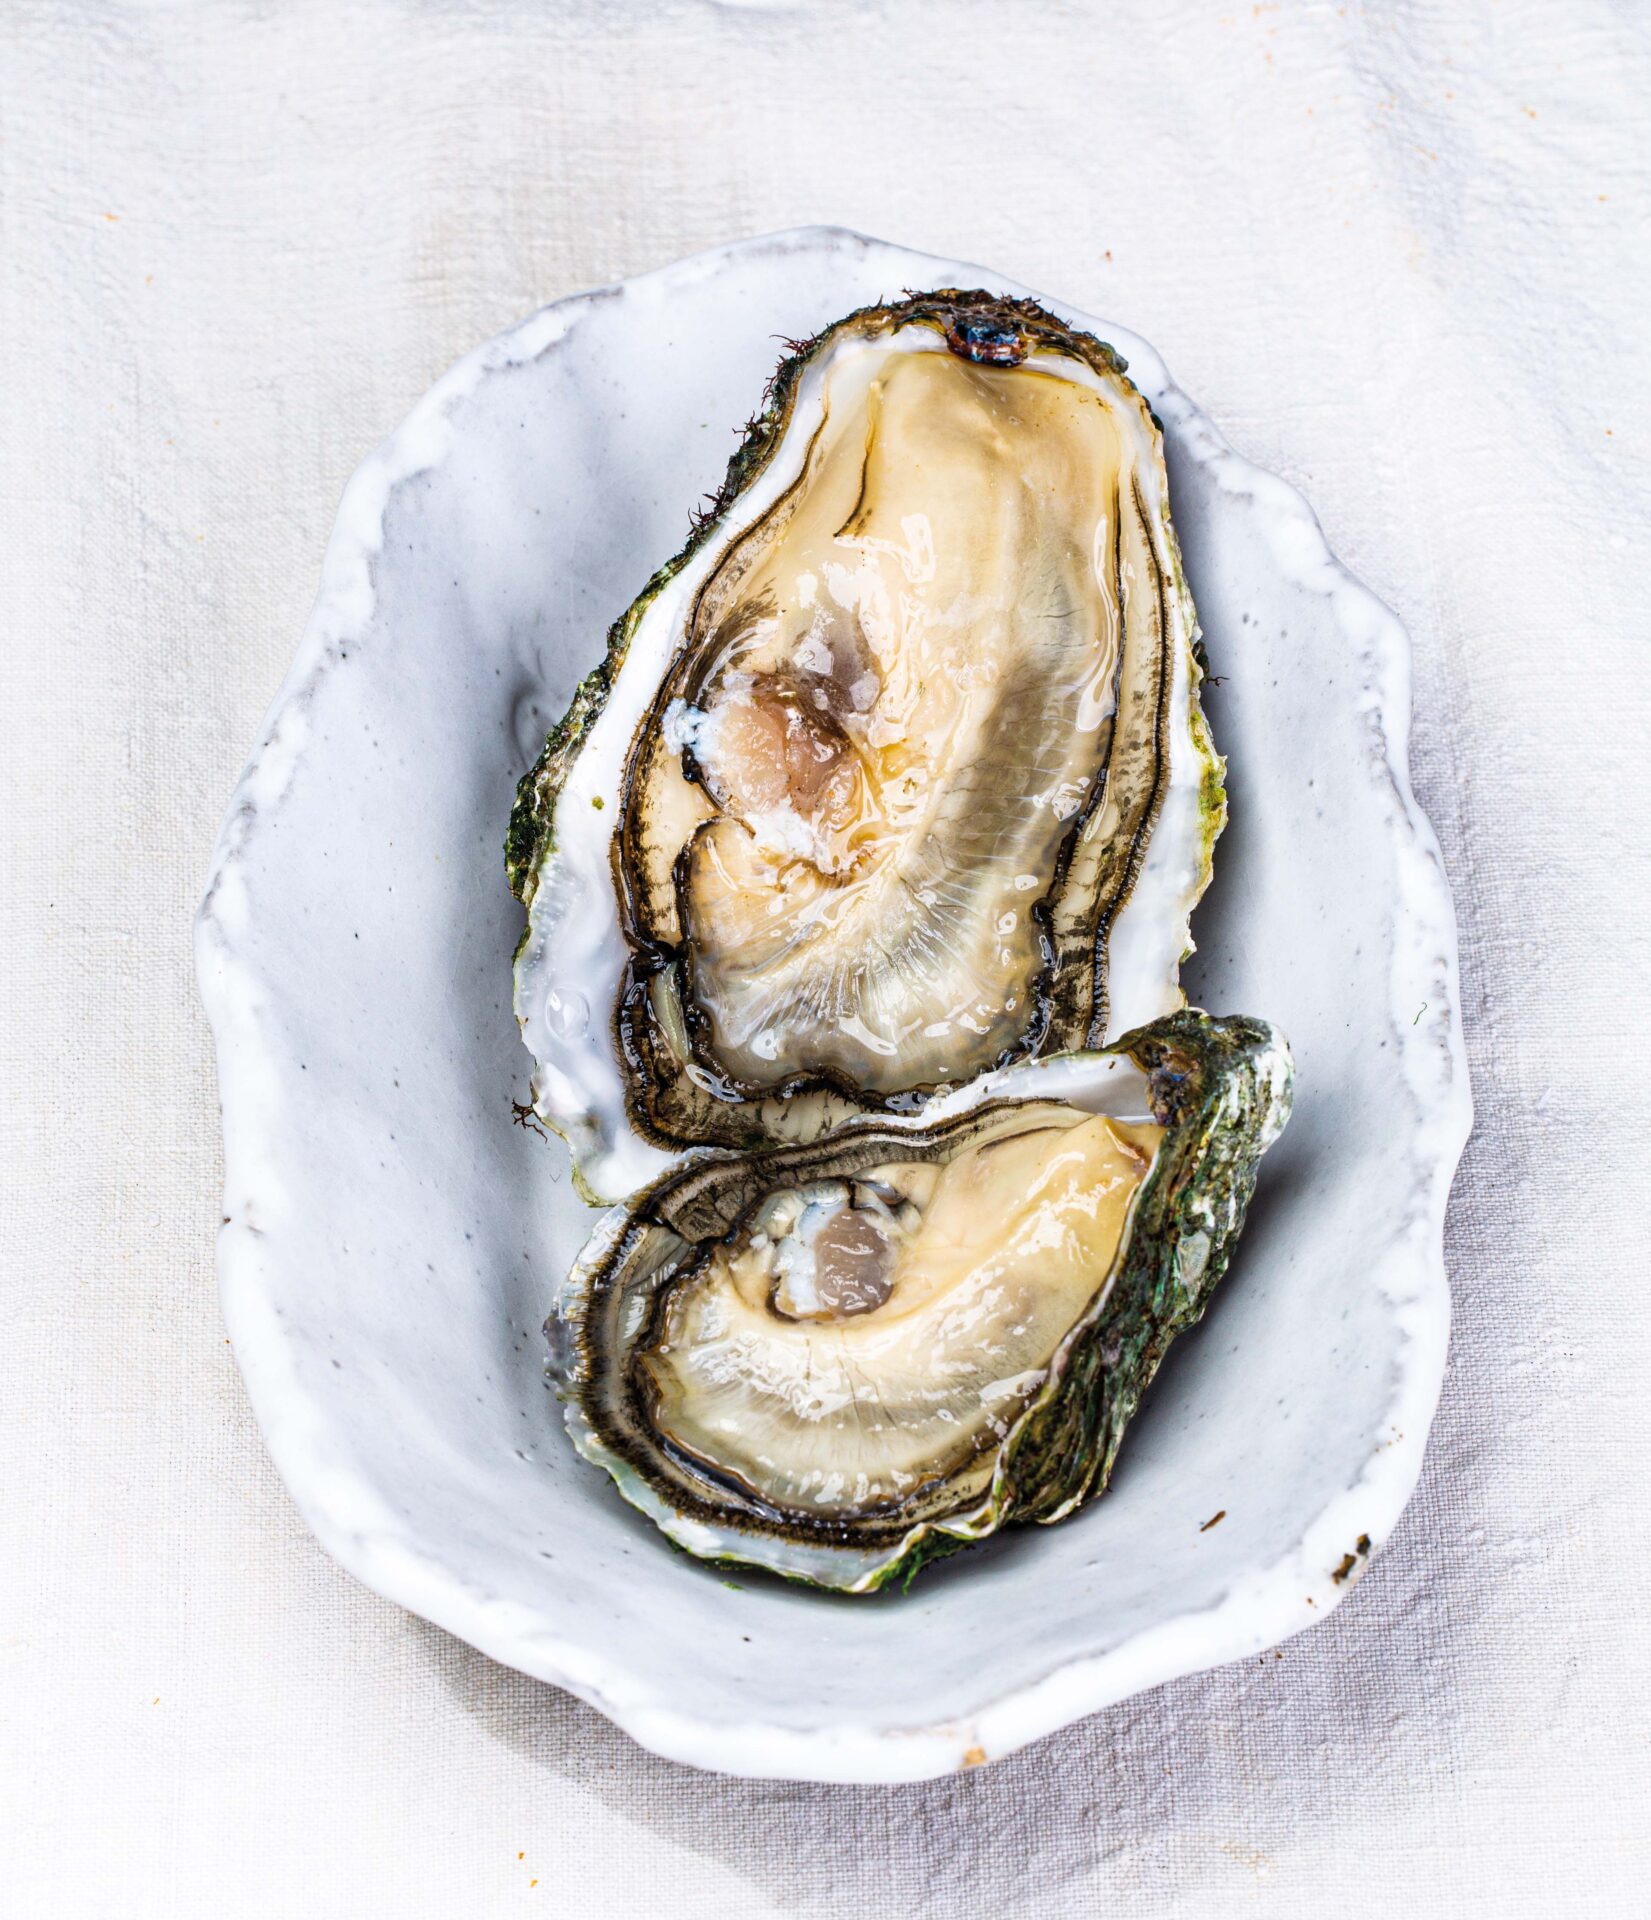 Les huîtres exquises d'Ostra Select prennent la route avec un nouveau service de restauration